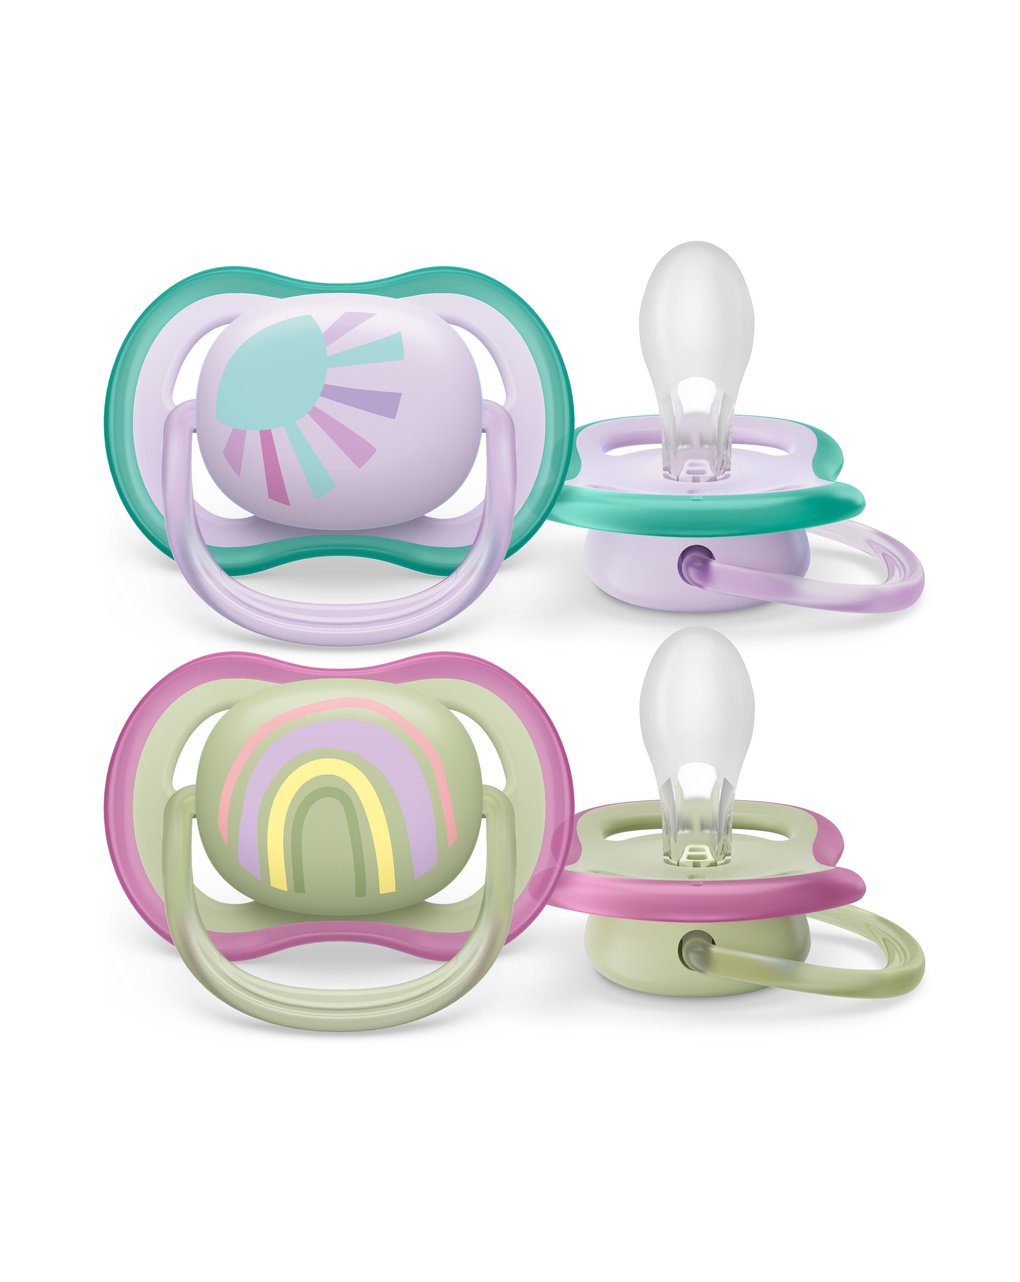 Chupetes Philips Avent Ultra Air: Comodidad y seguridad para bebés